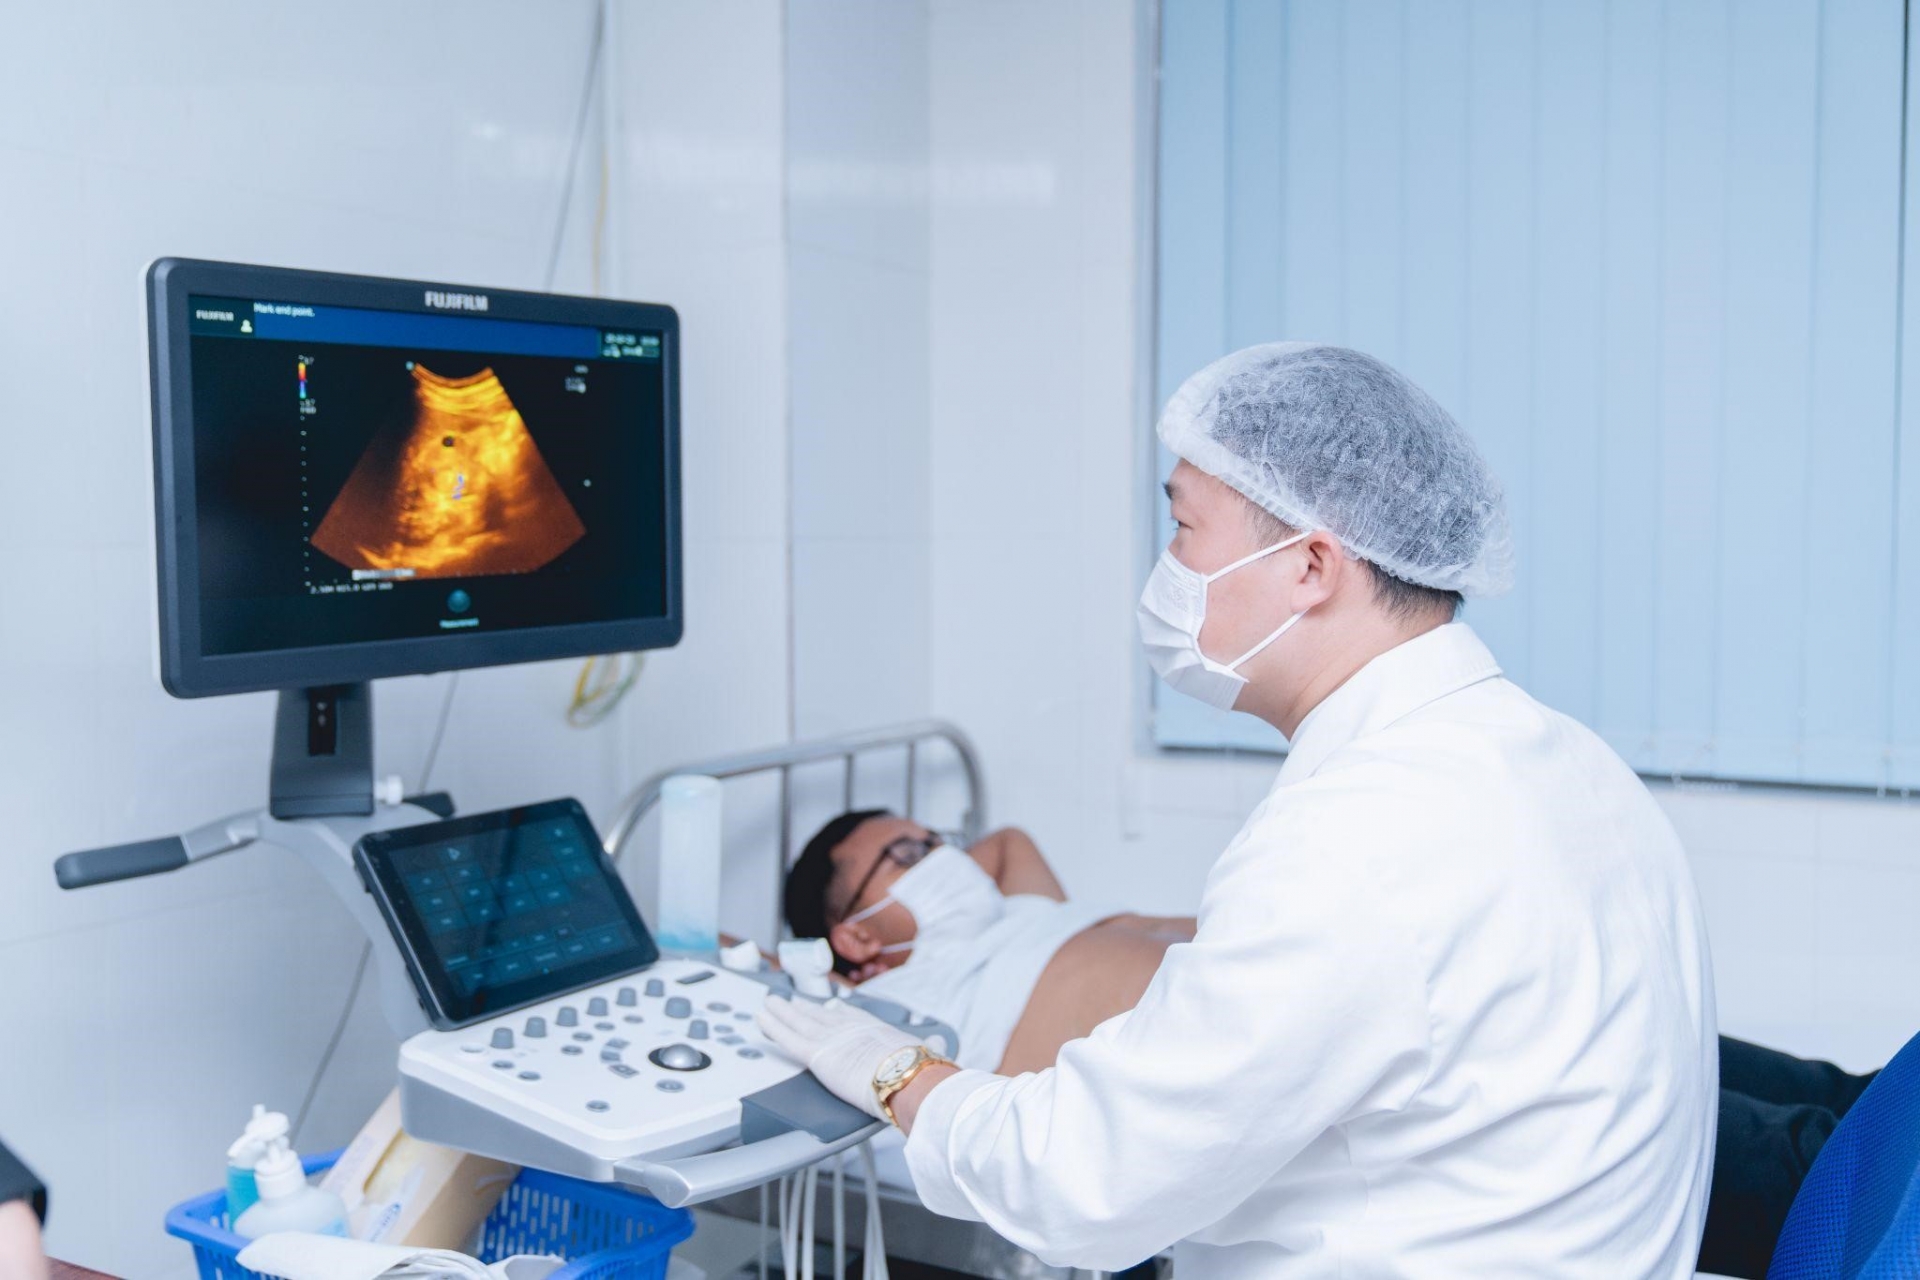 Đa khoa Phương Nam ứng dụng các loại máy móc, công nghệ cao trong quá trình điều trị bệnh